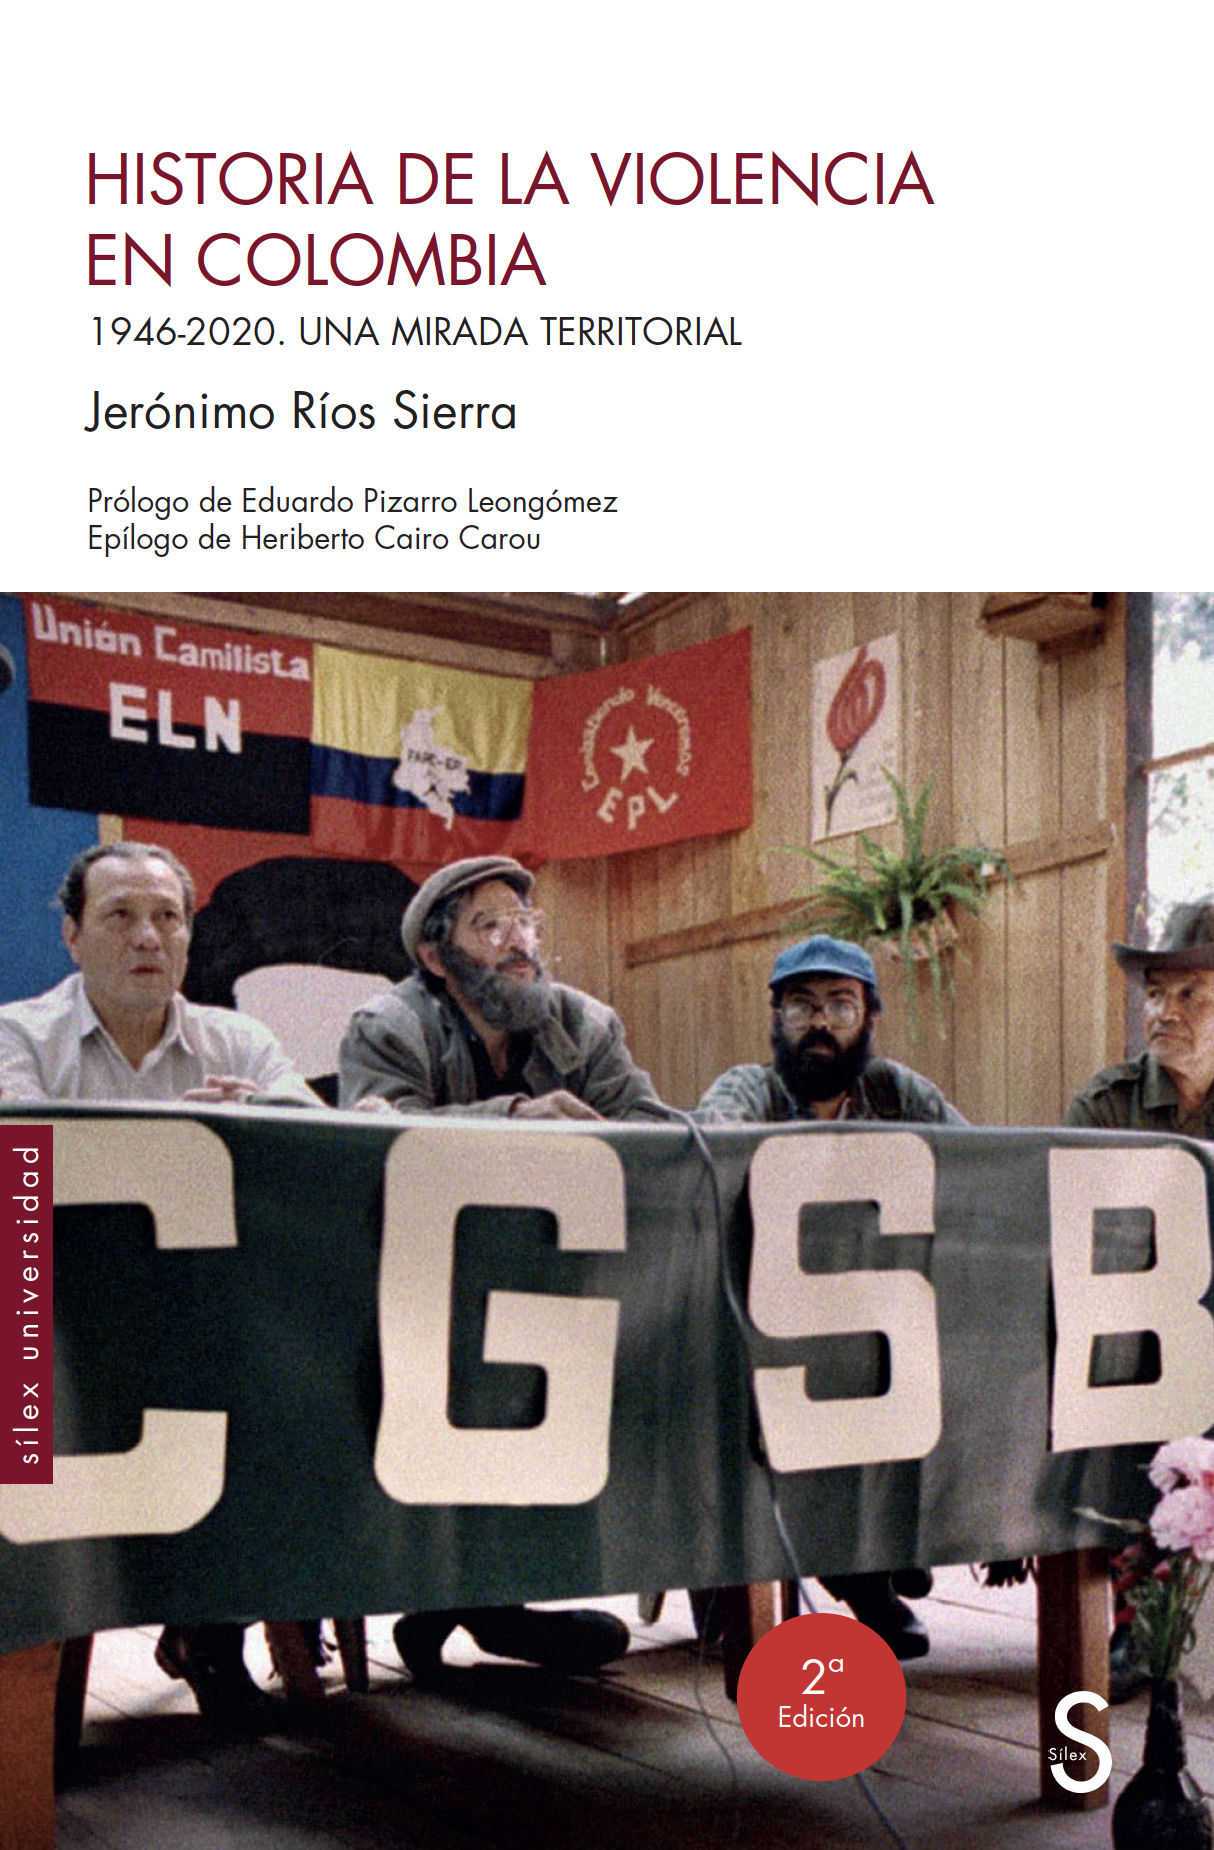 HISTORIA DE LA VIOLENCIA EN COLOMBIA. 1946-2020. UNA MIRADA TERRITORIAL